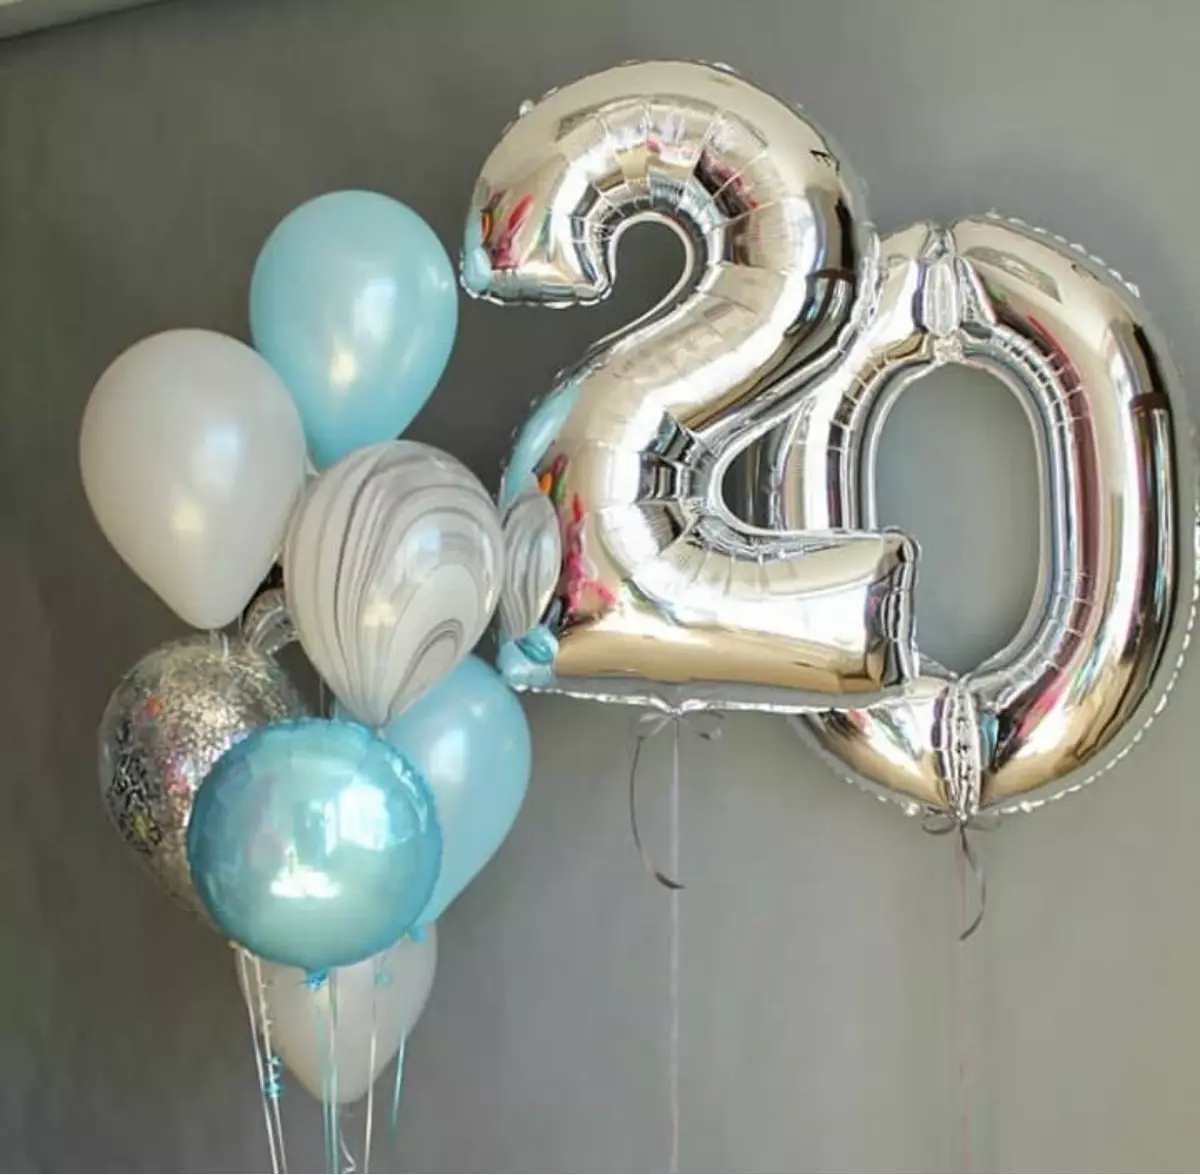 Zāles dekorēšana ar bumbiņām uz jubileju: sievietei un vīriešiem uz gadadienu 50 un 60, 30 un 35, 70 gadus veci un citos datumos ar baloniem 24641_46